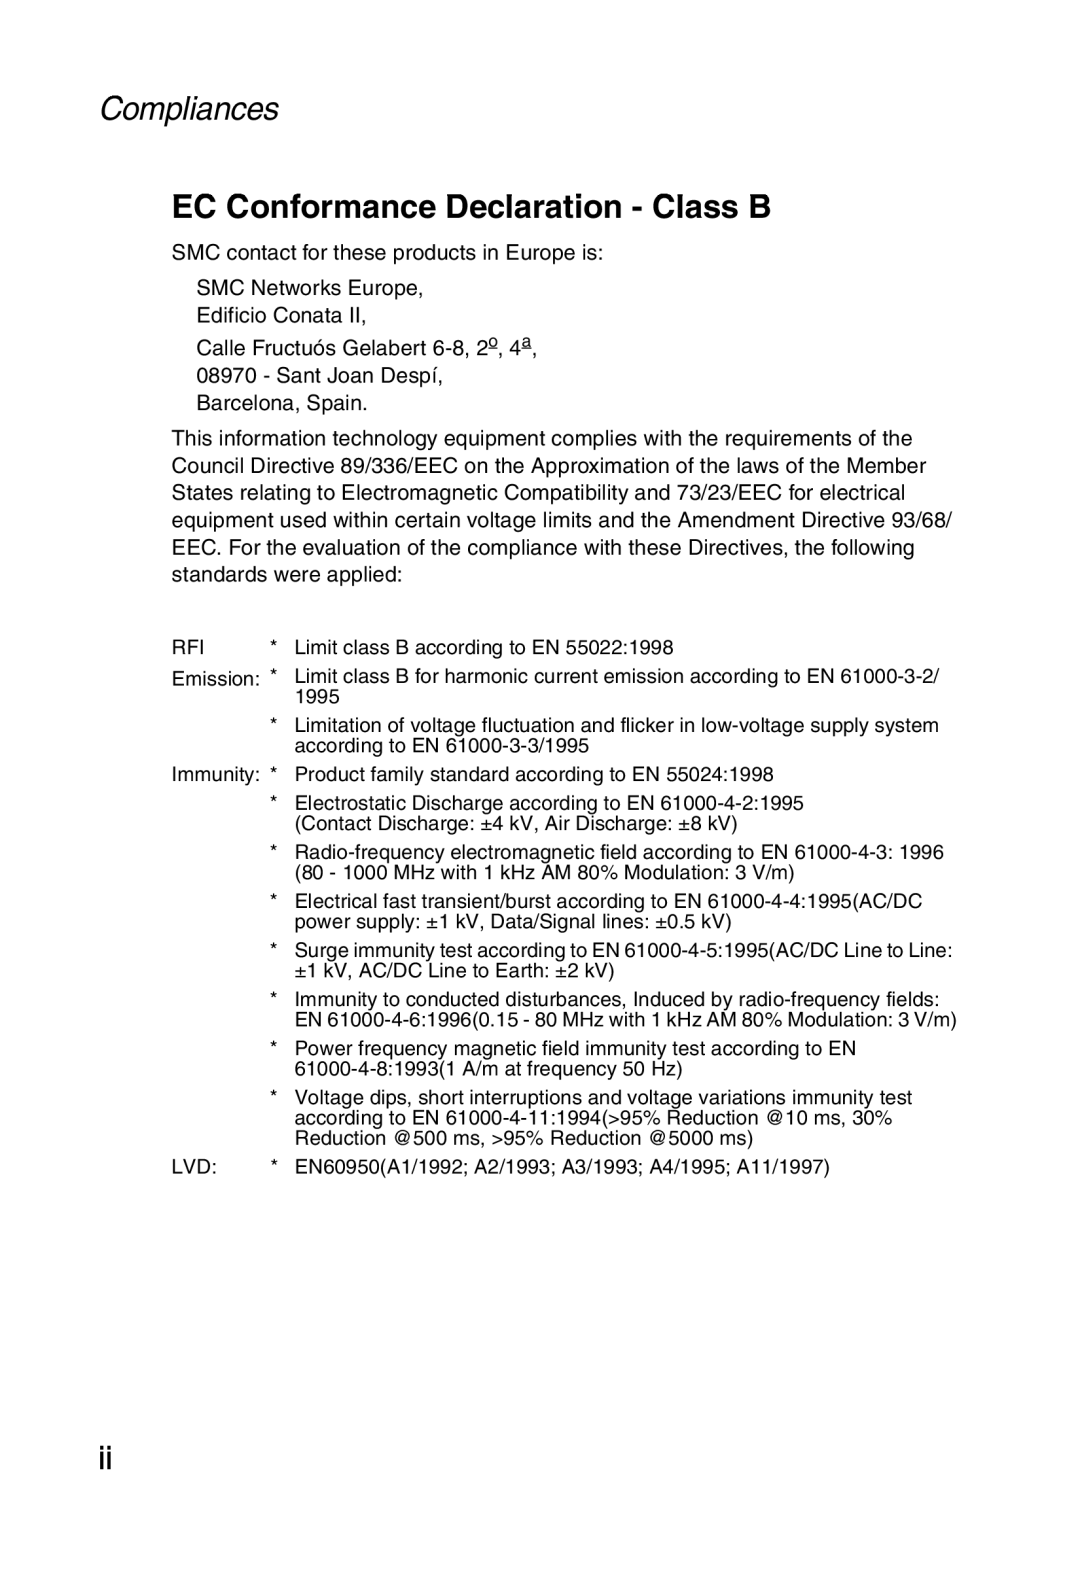 Sharp SMC7004ABR, S M C 7 0 0 4 A B R manual Compliances, EC Conformance Declaration - Class B 